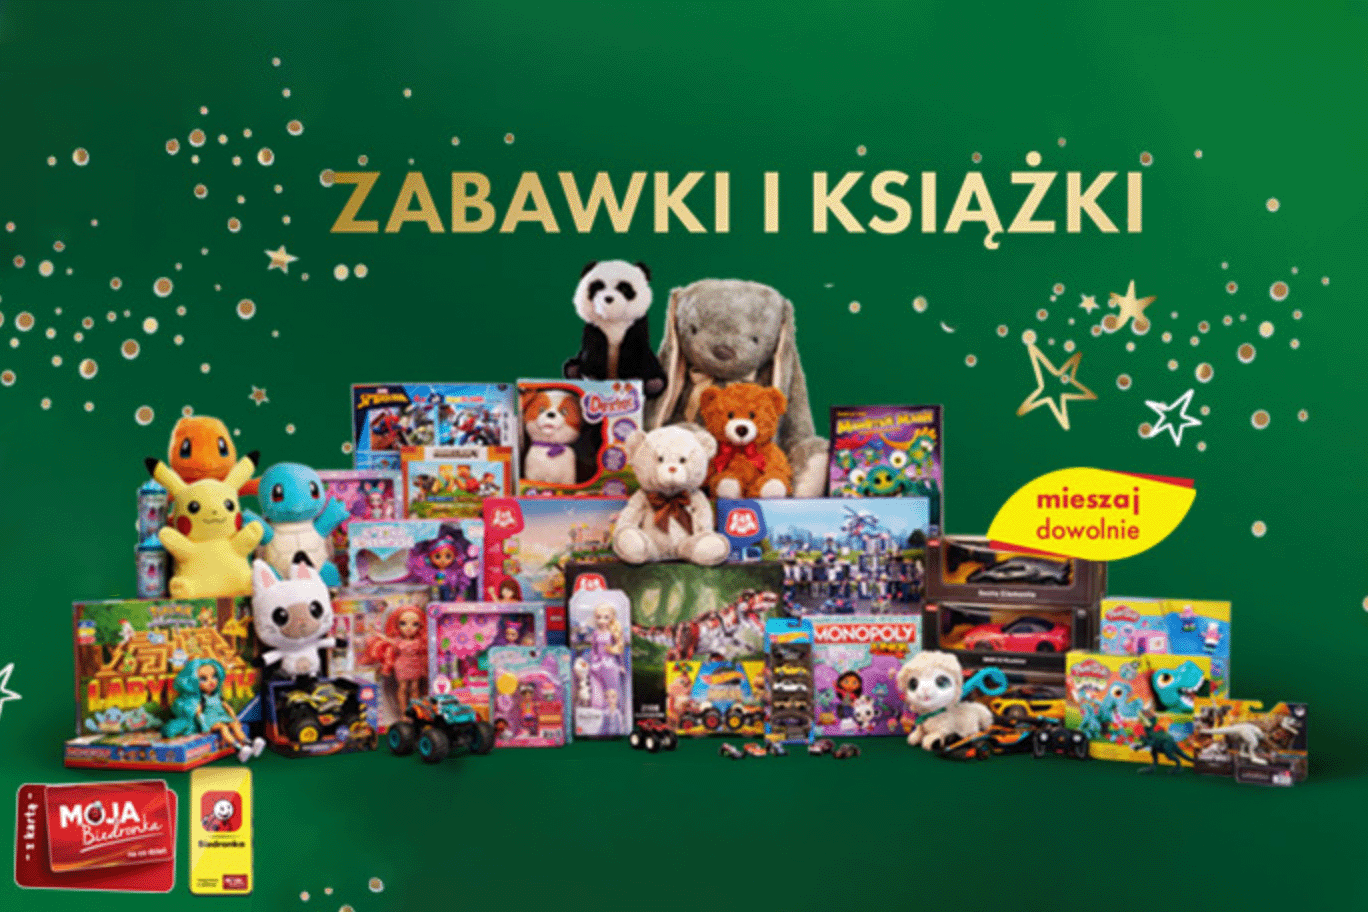 Książki i zabawki w Biedronce taniej o 50%